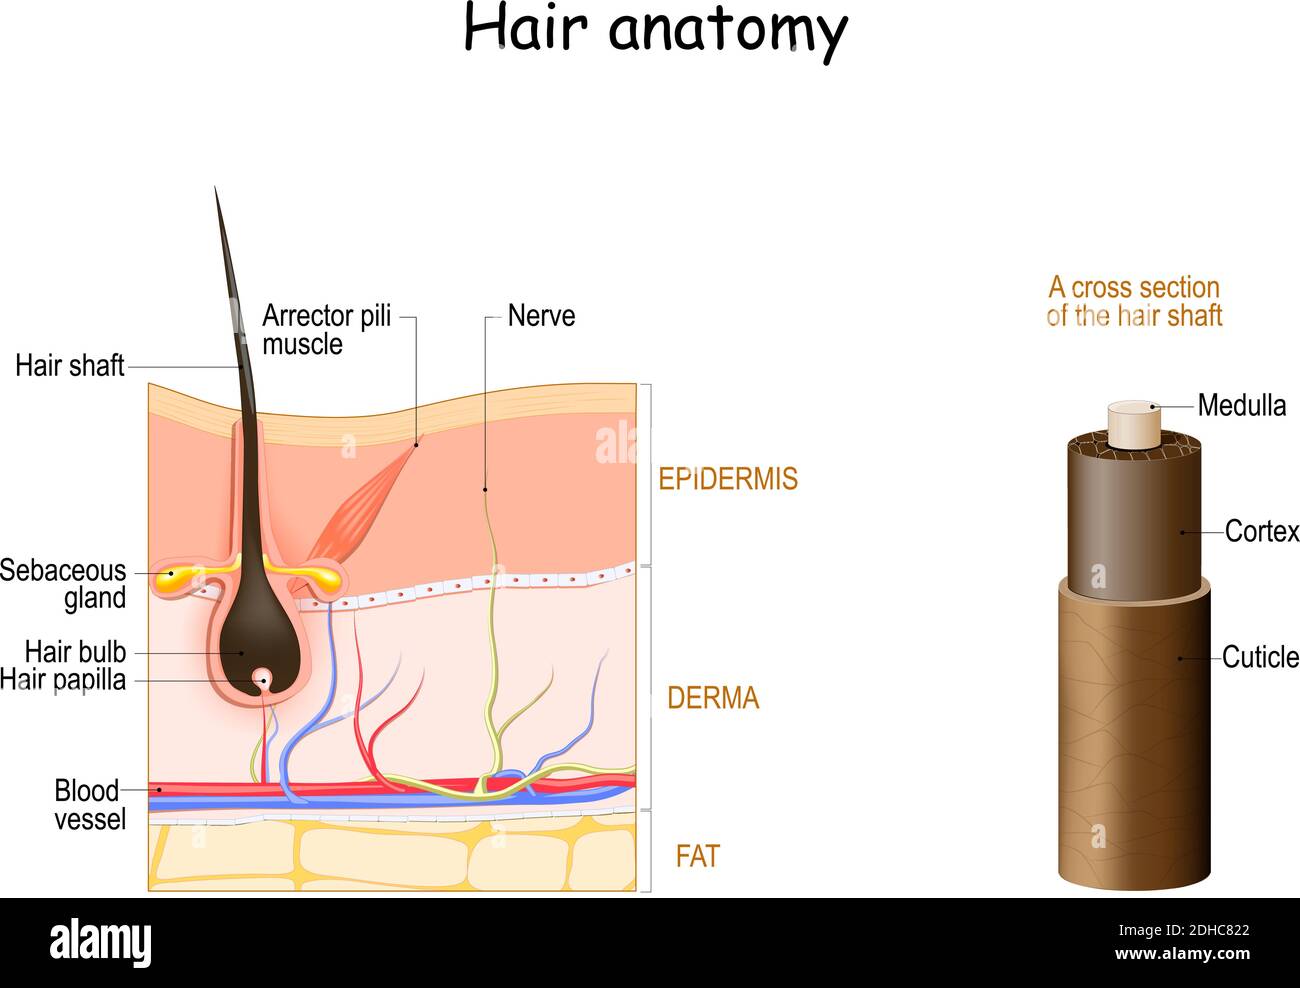 Anatomia dei capelli. Sezione trasversale dell'albero dei capelli. Strati della pelle con follicolo dei capelli e muscolo del pili dell'Arrector. Diagramma vettoriale. Illustrazione medica dettagliata Illustrazione Vettoriale